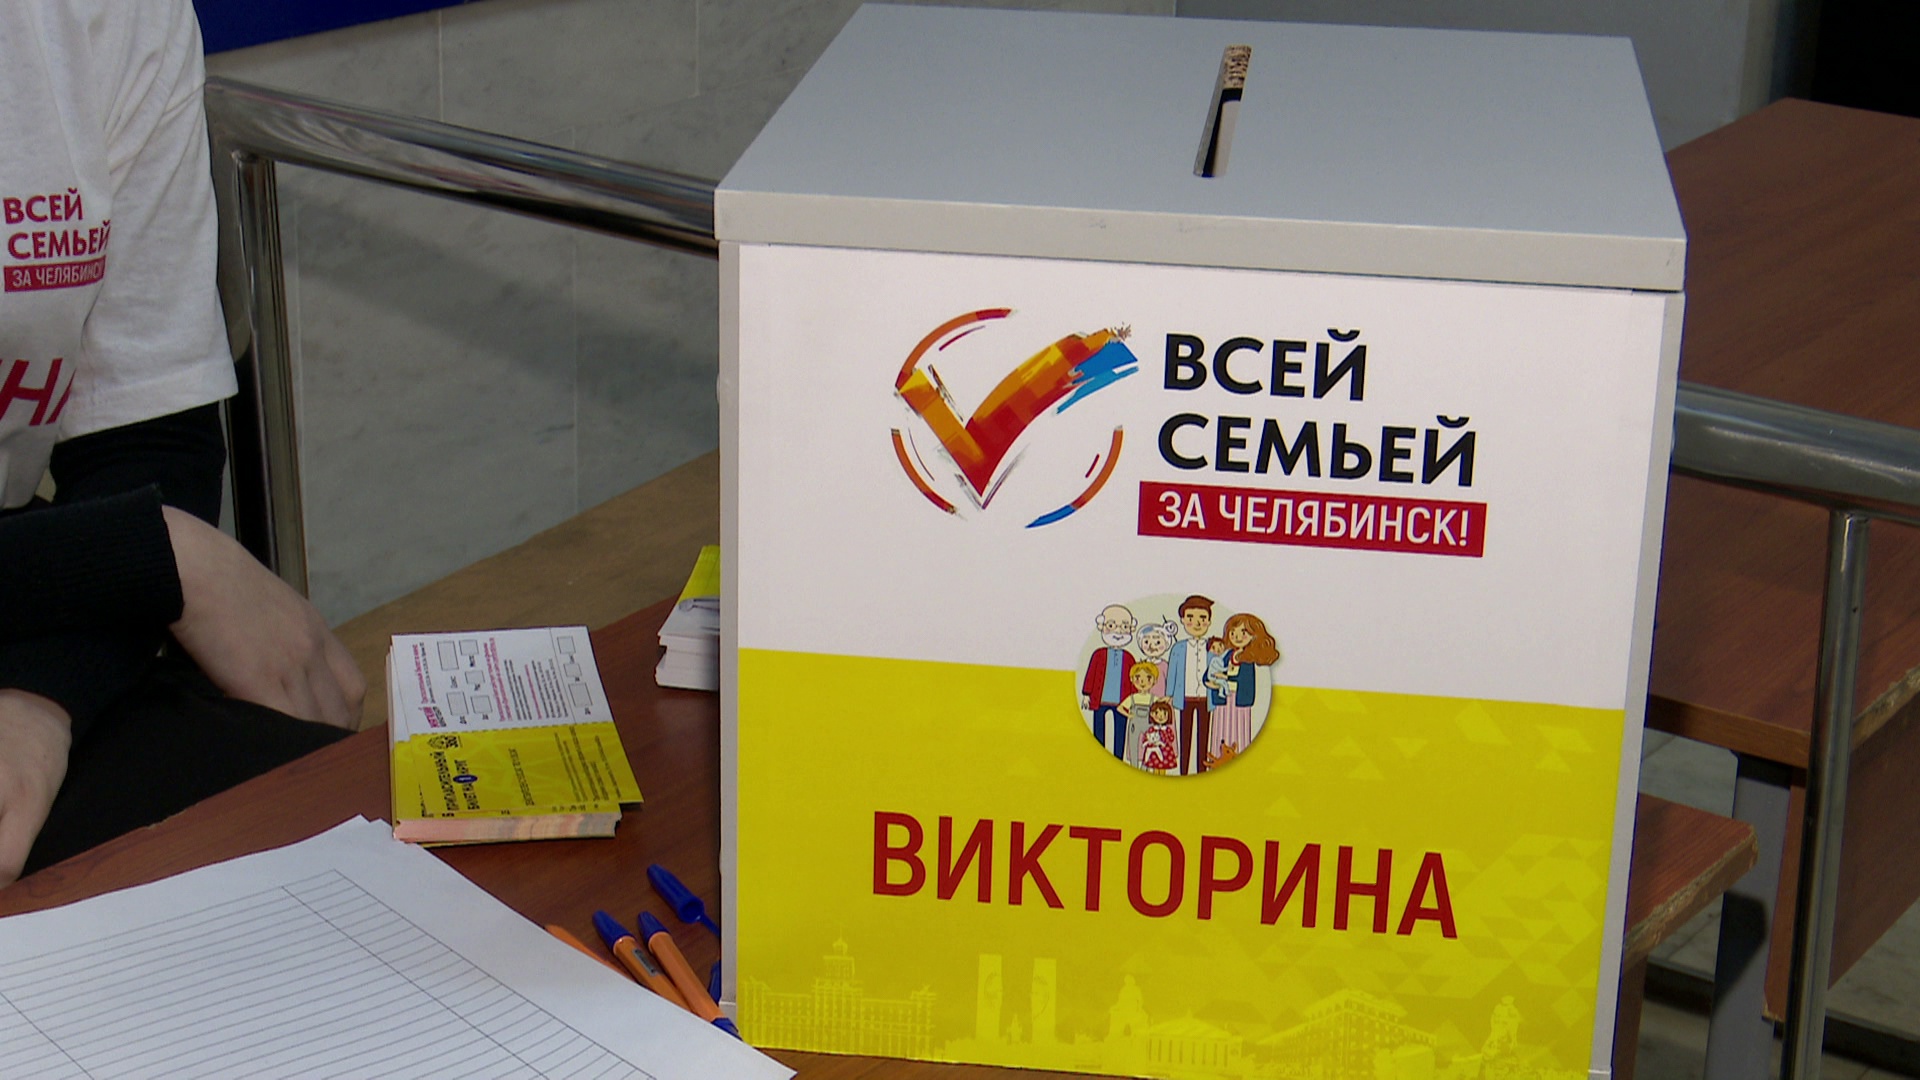 Викторину с ценными призами проведут в дни выборов в Челябинской области